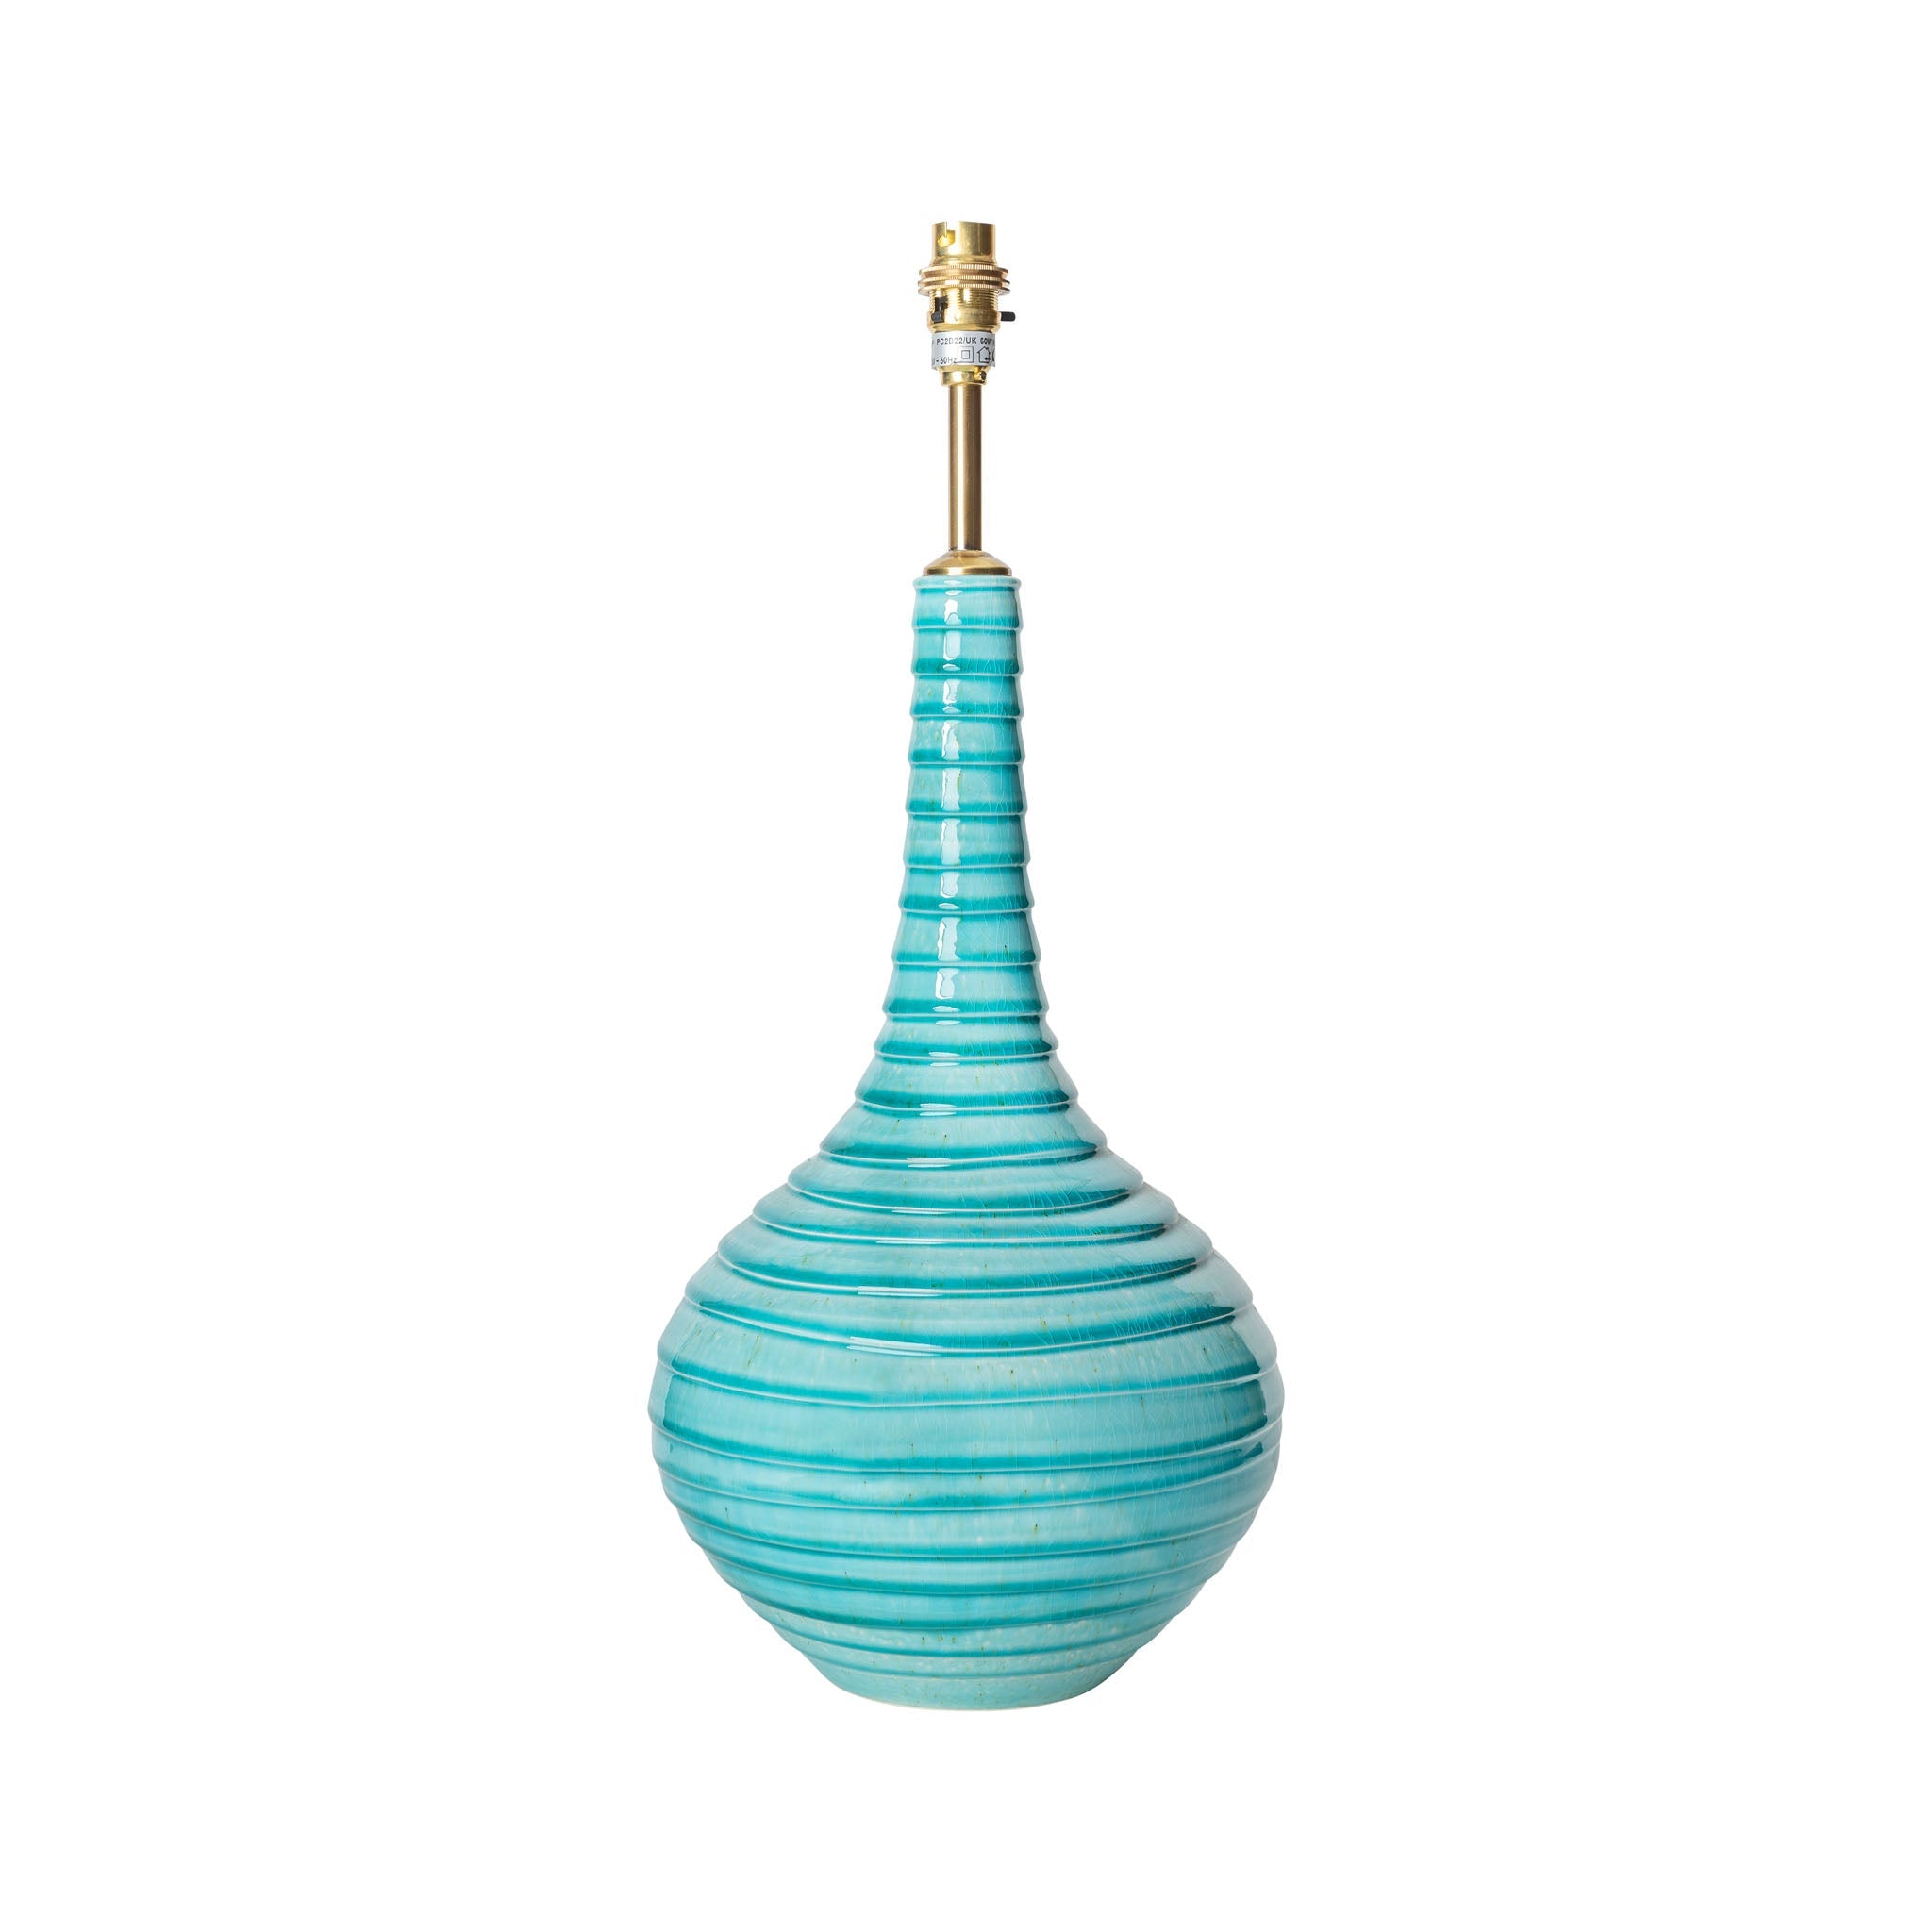 Turquoise Spiral Teardrop Ceramic Lamp Base